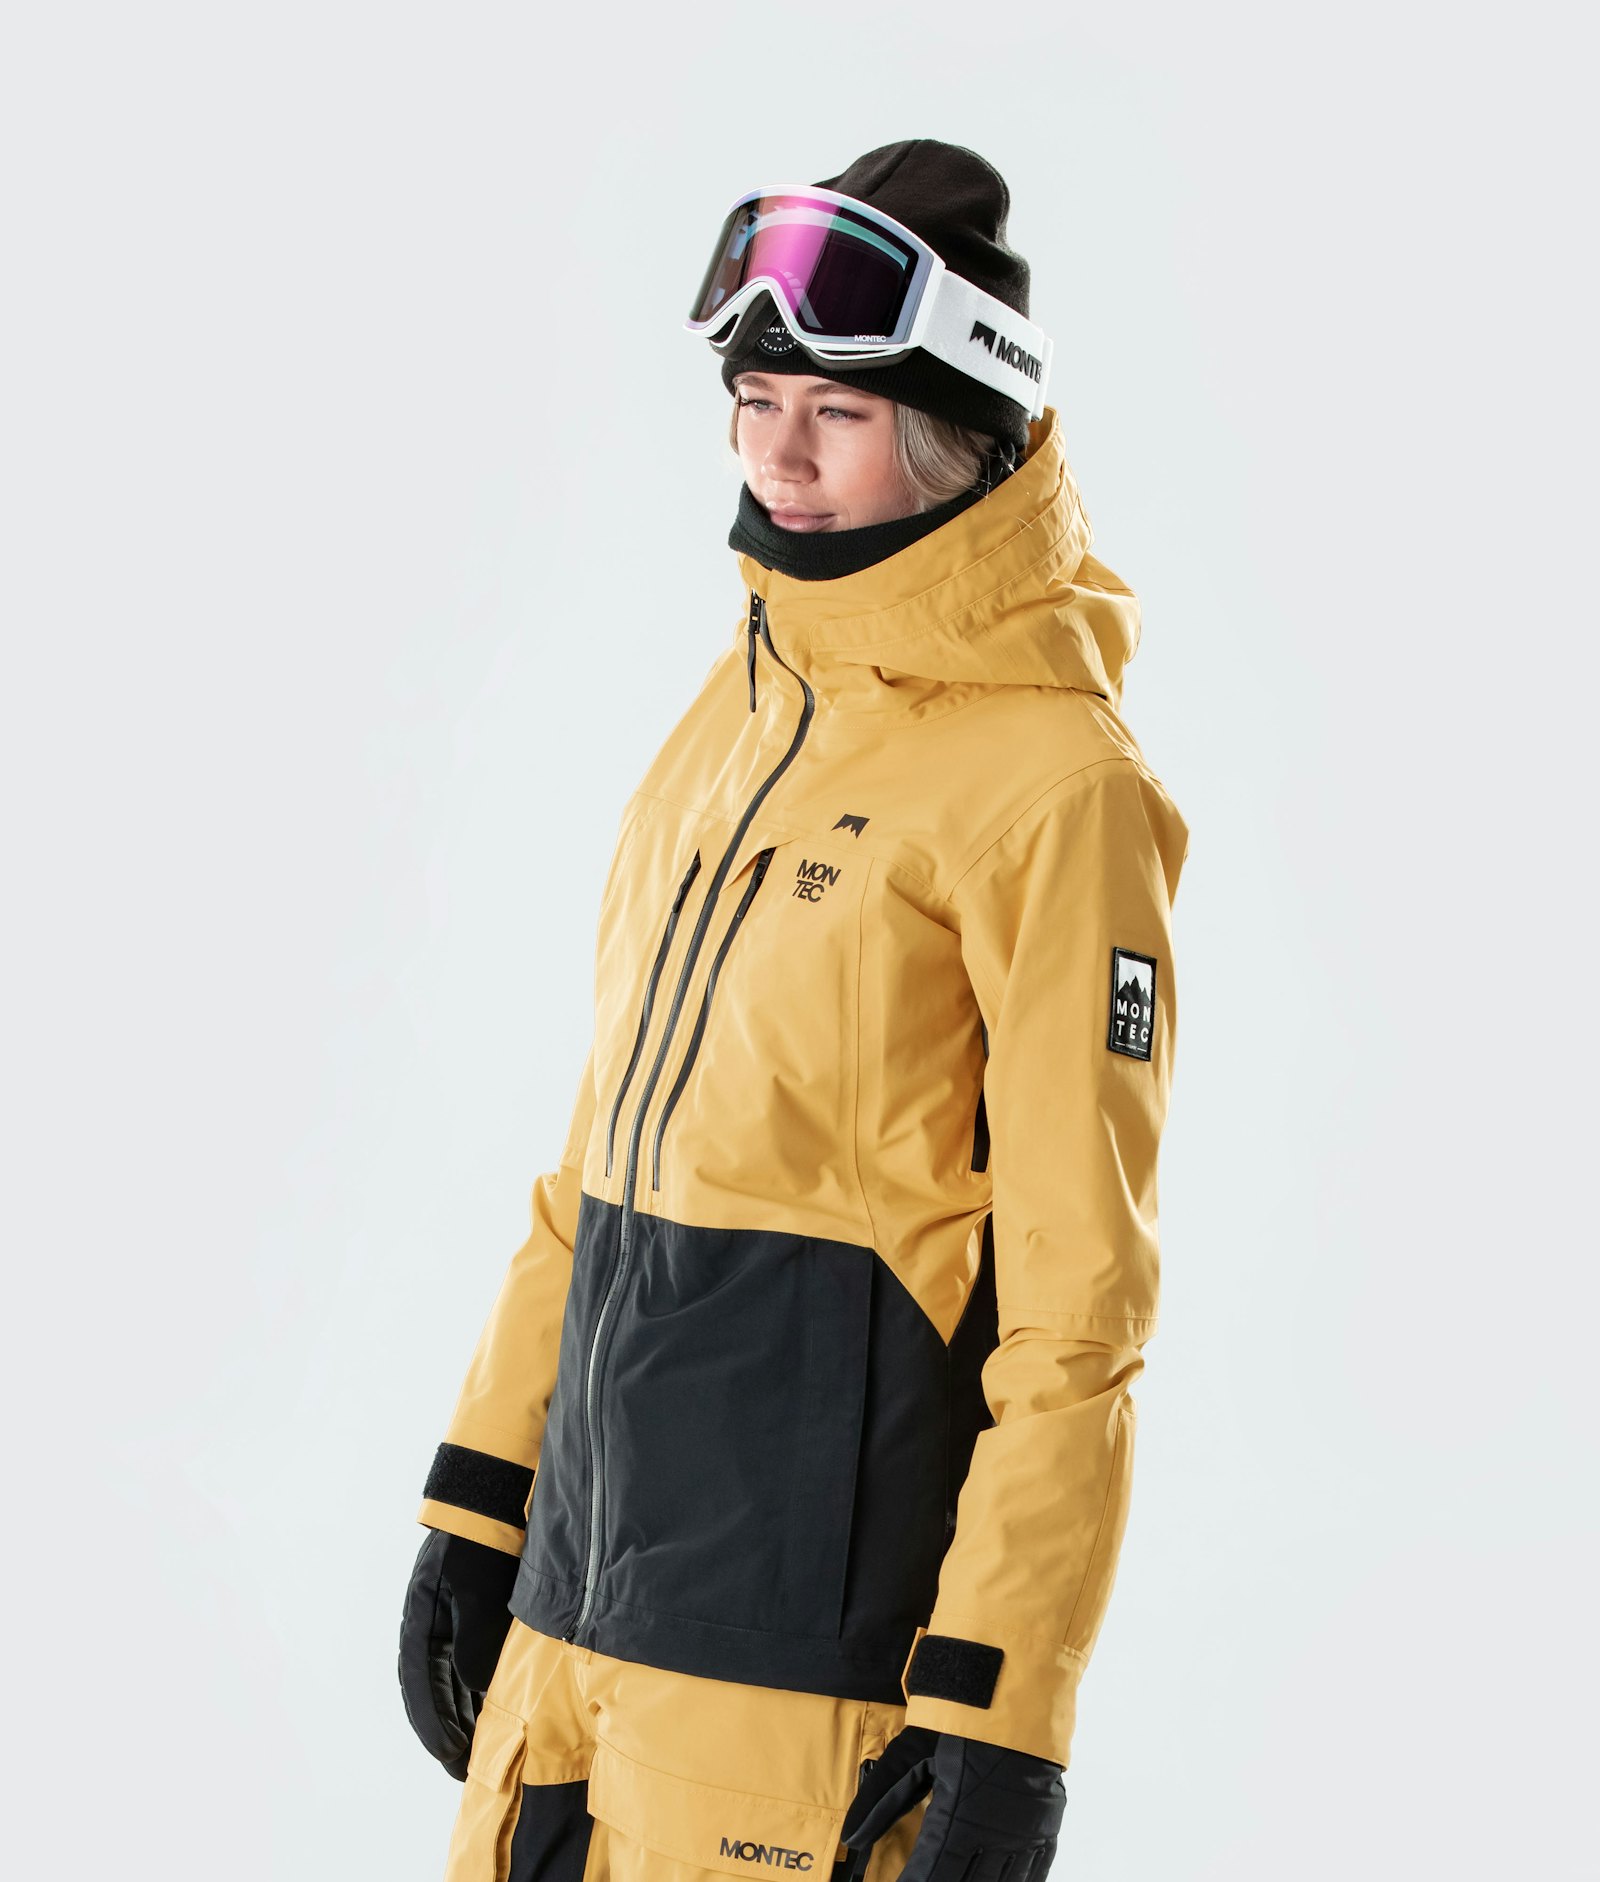 Moss W 2020 Veste Snowboard Femme Yellow/Black